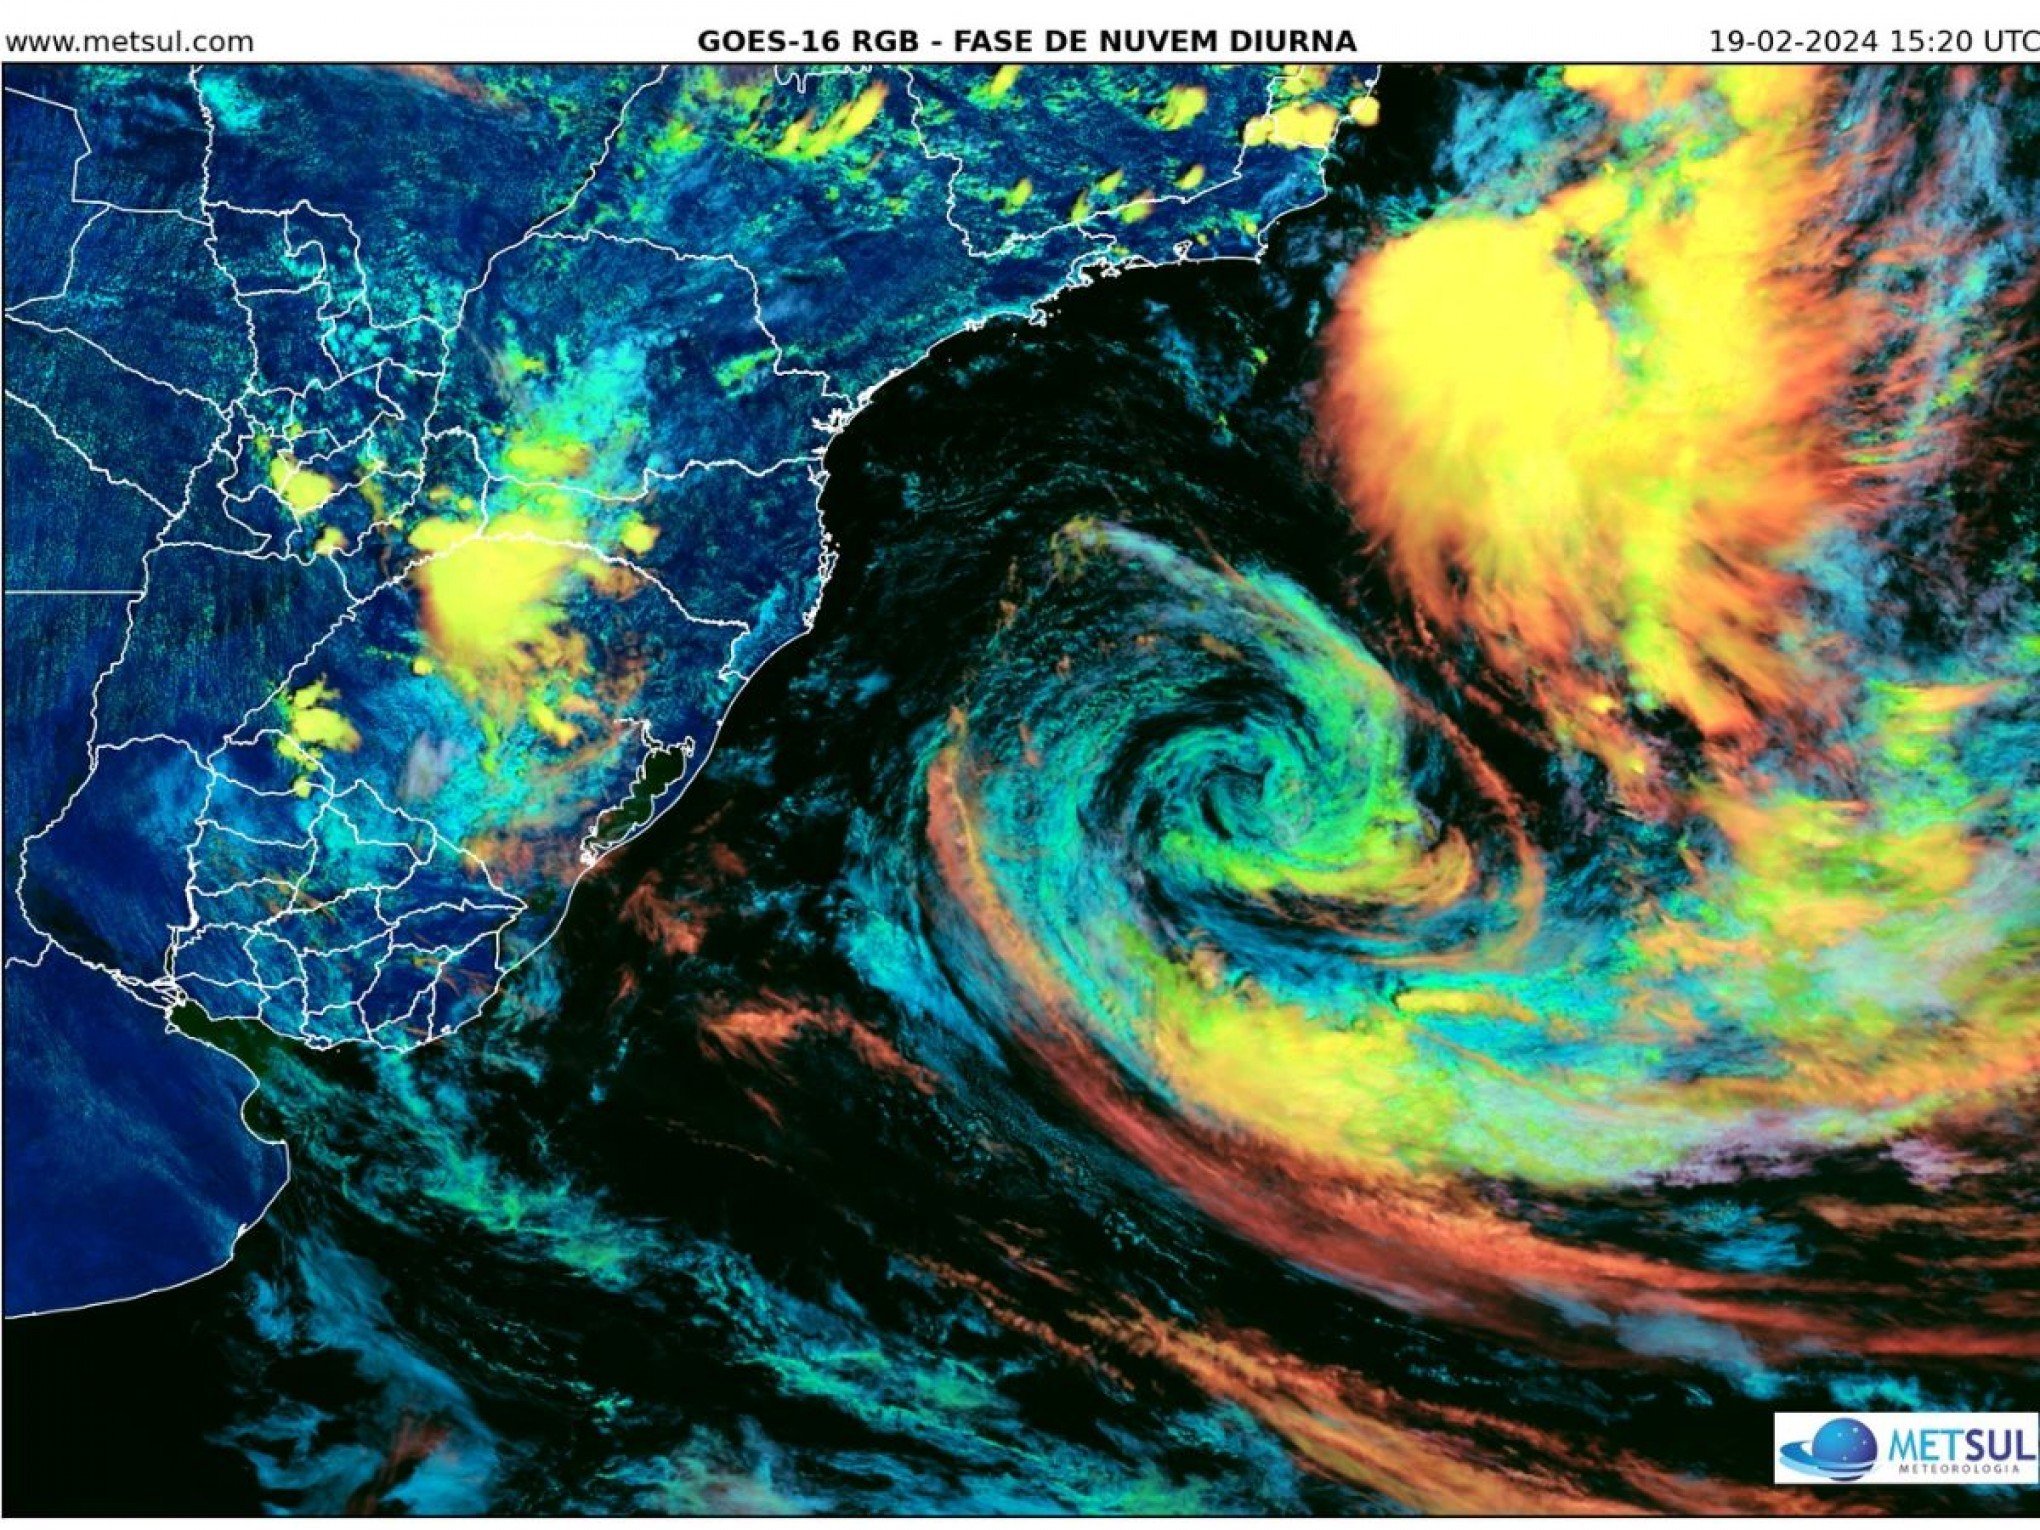 Marinha muda classificação da tempestade tropical Akará; entenda o que aconteceu com o fenômeno